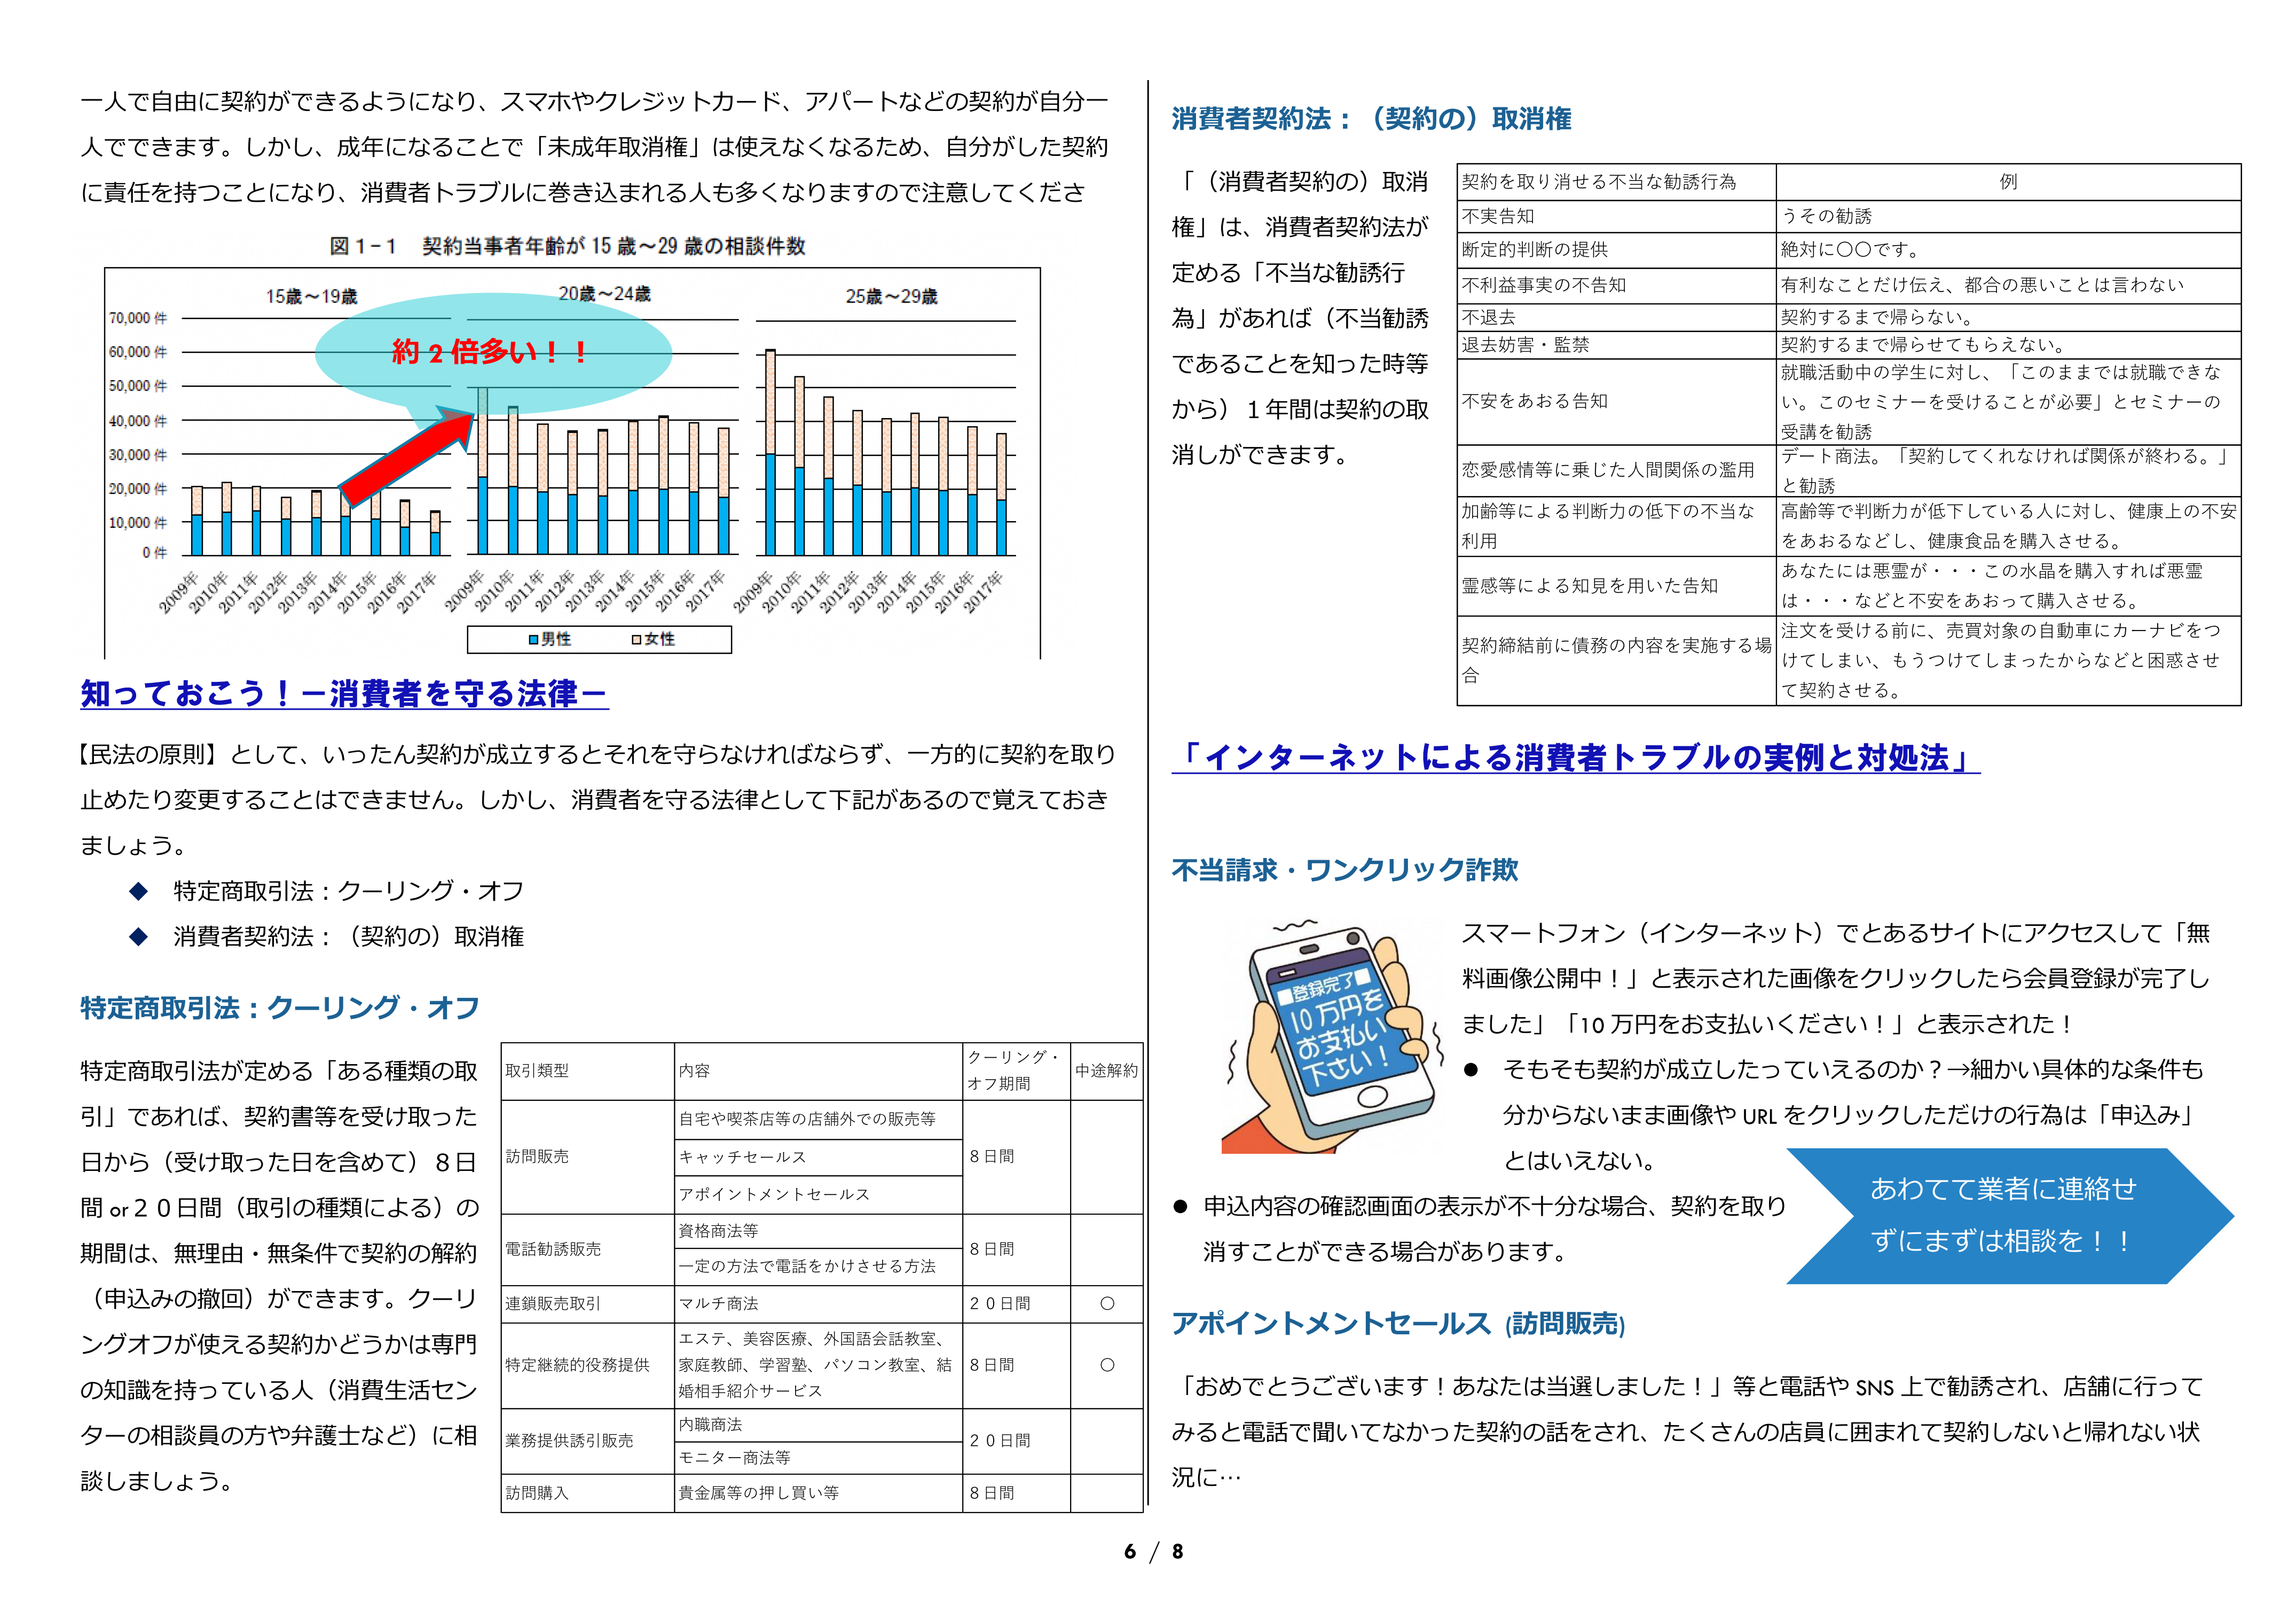 http://www.shotoku.jp/gsh/news/10%E5%8F%B7_%E7%B7%8F%E5%90%88%E7%99%BB%E6%A0%A1%E6%97%A51%E5%B9%B4%E3%80%813%E5%B9%B4_06.png